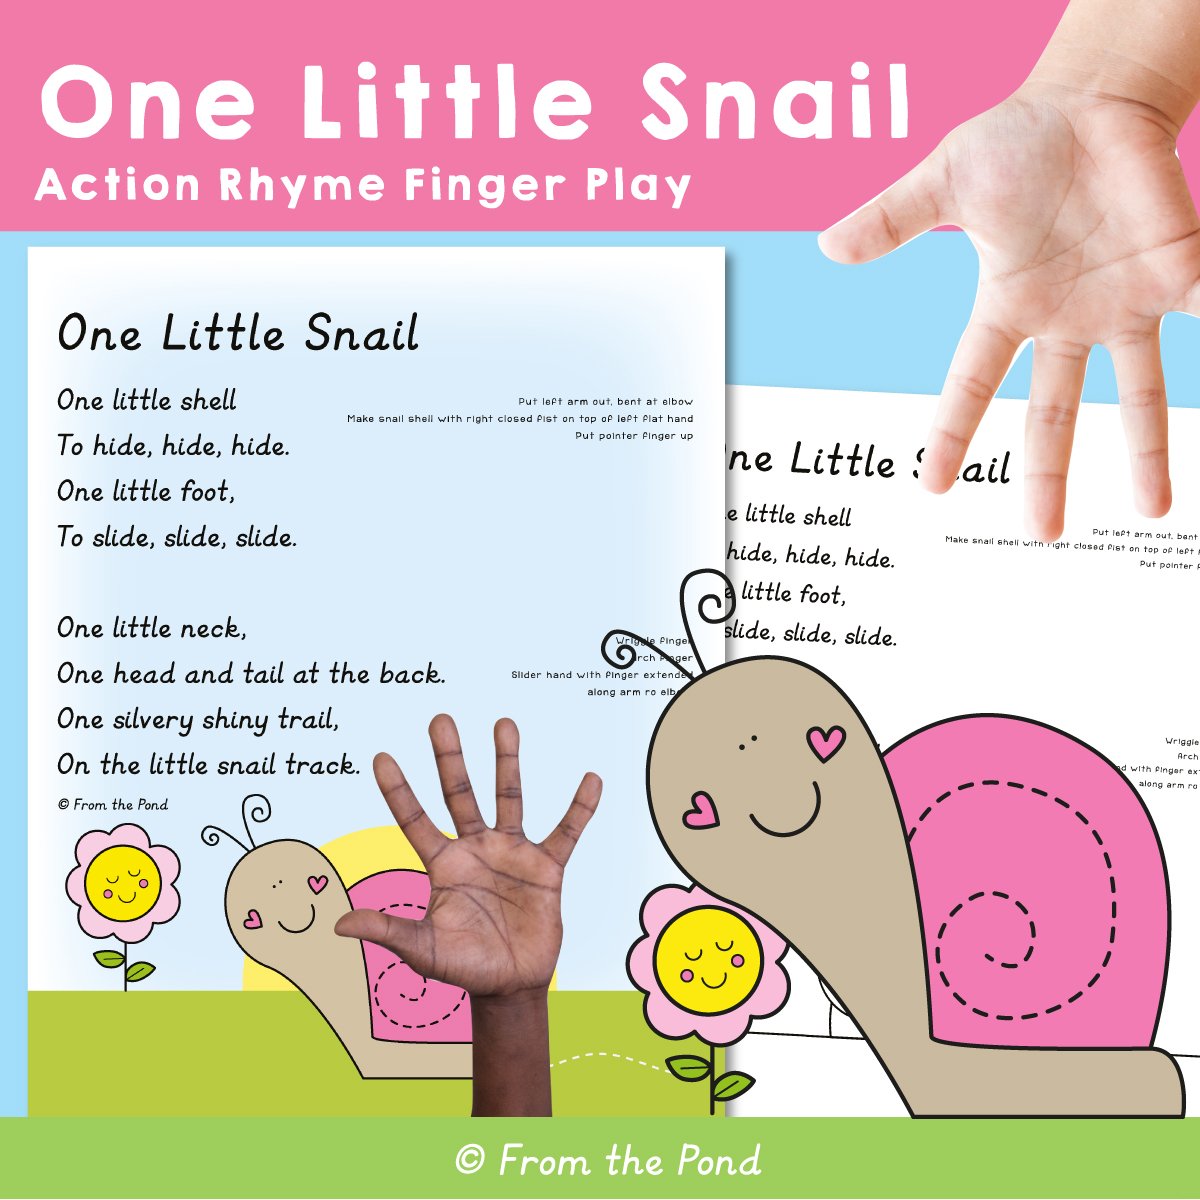 One Little Snail